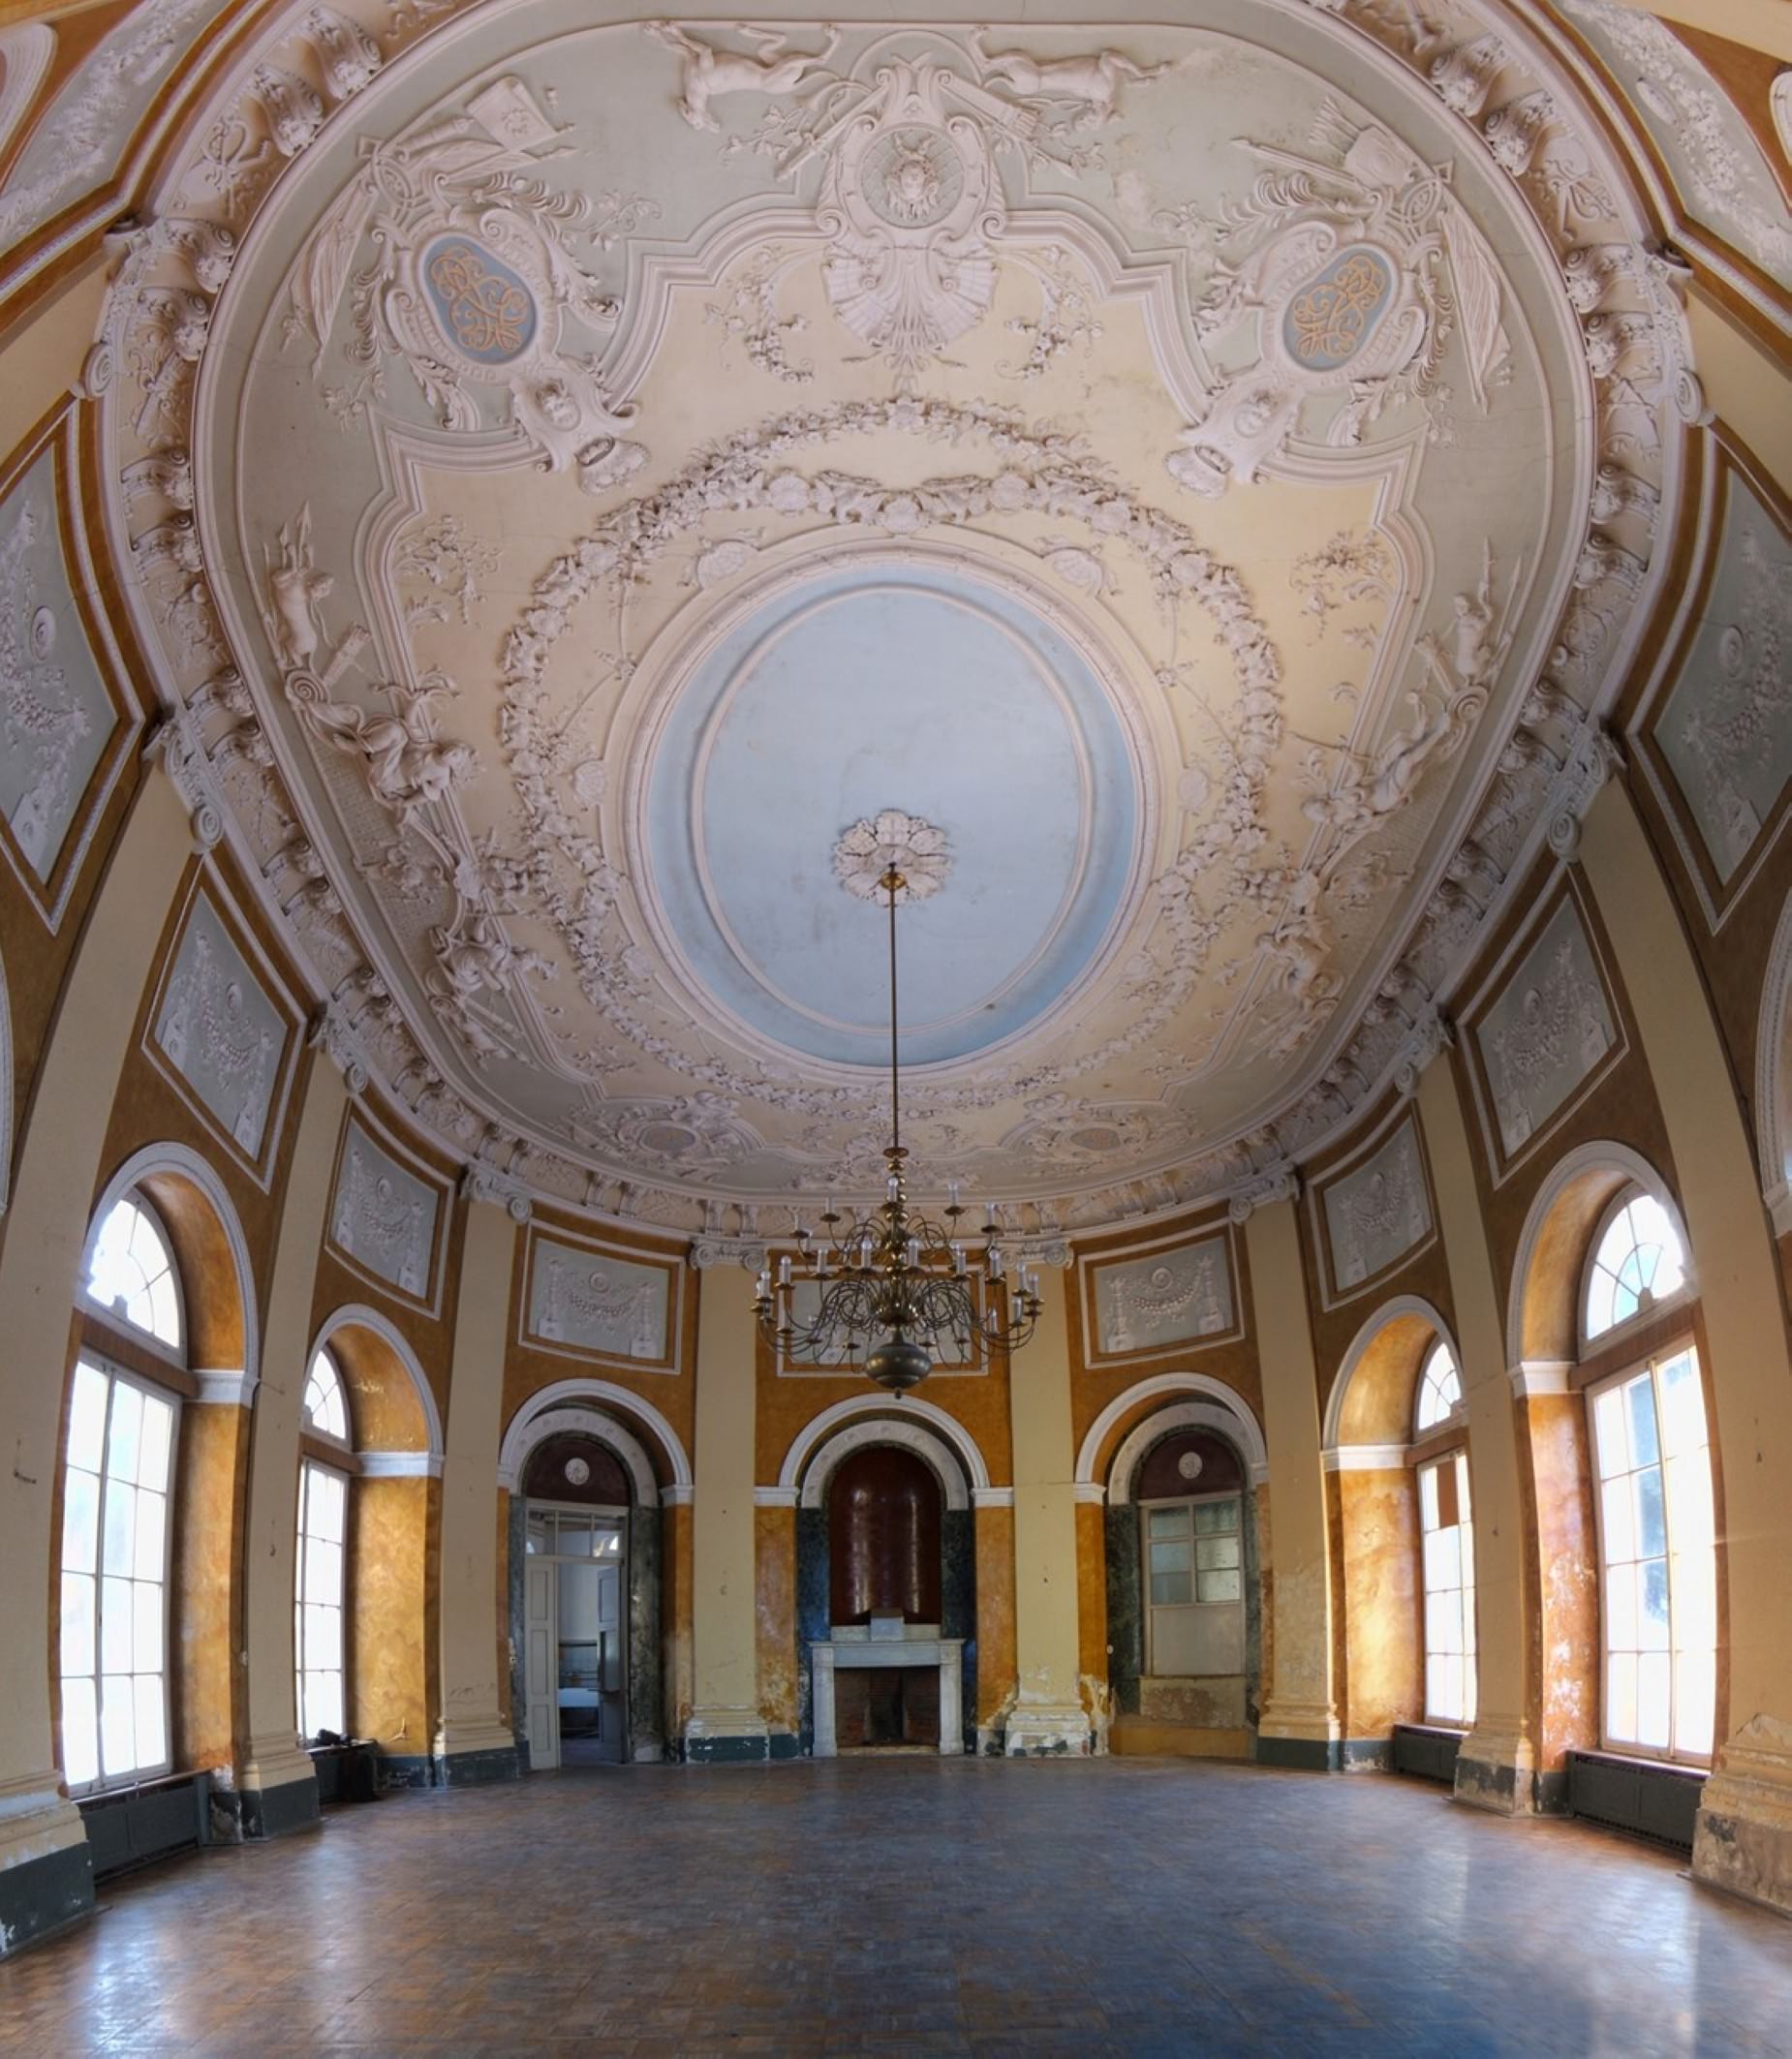 Telemannsaal auf Schloss Wilhelmsthal, Foto: Christian Knobloch